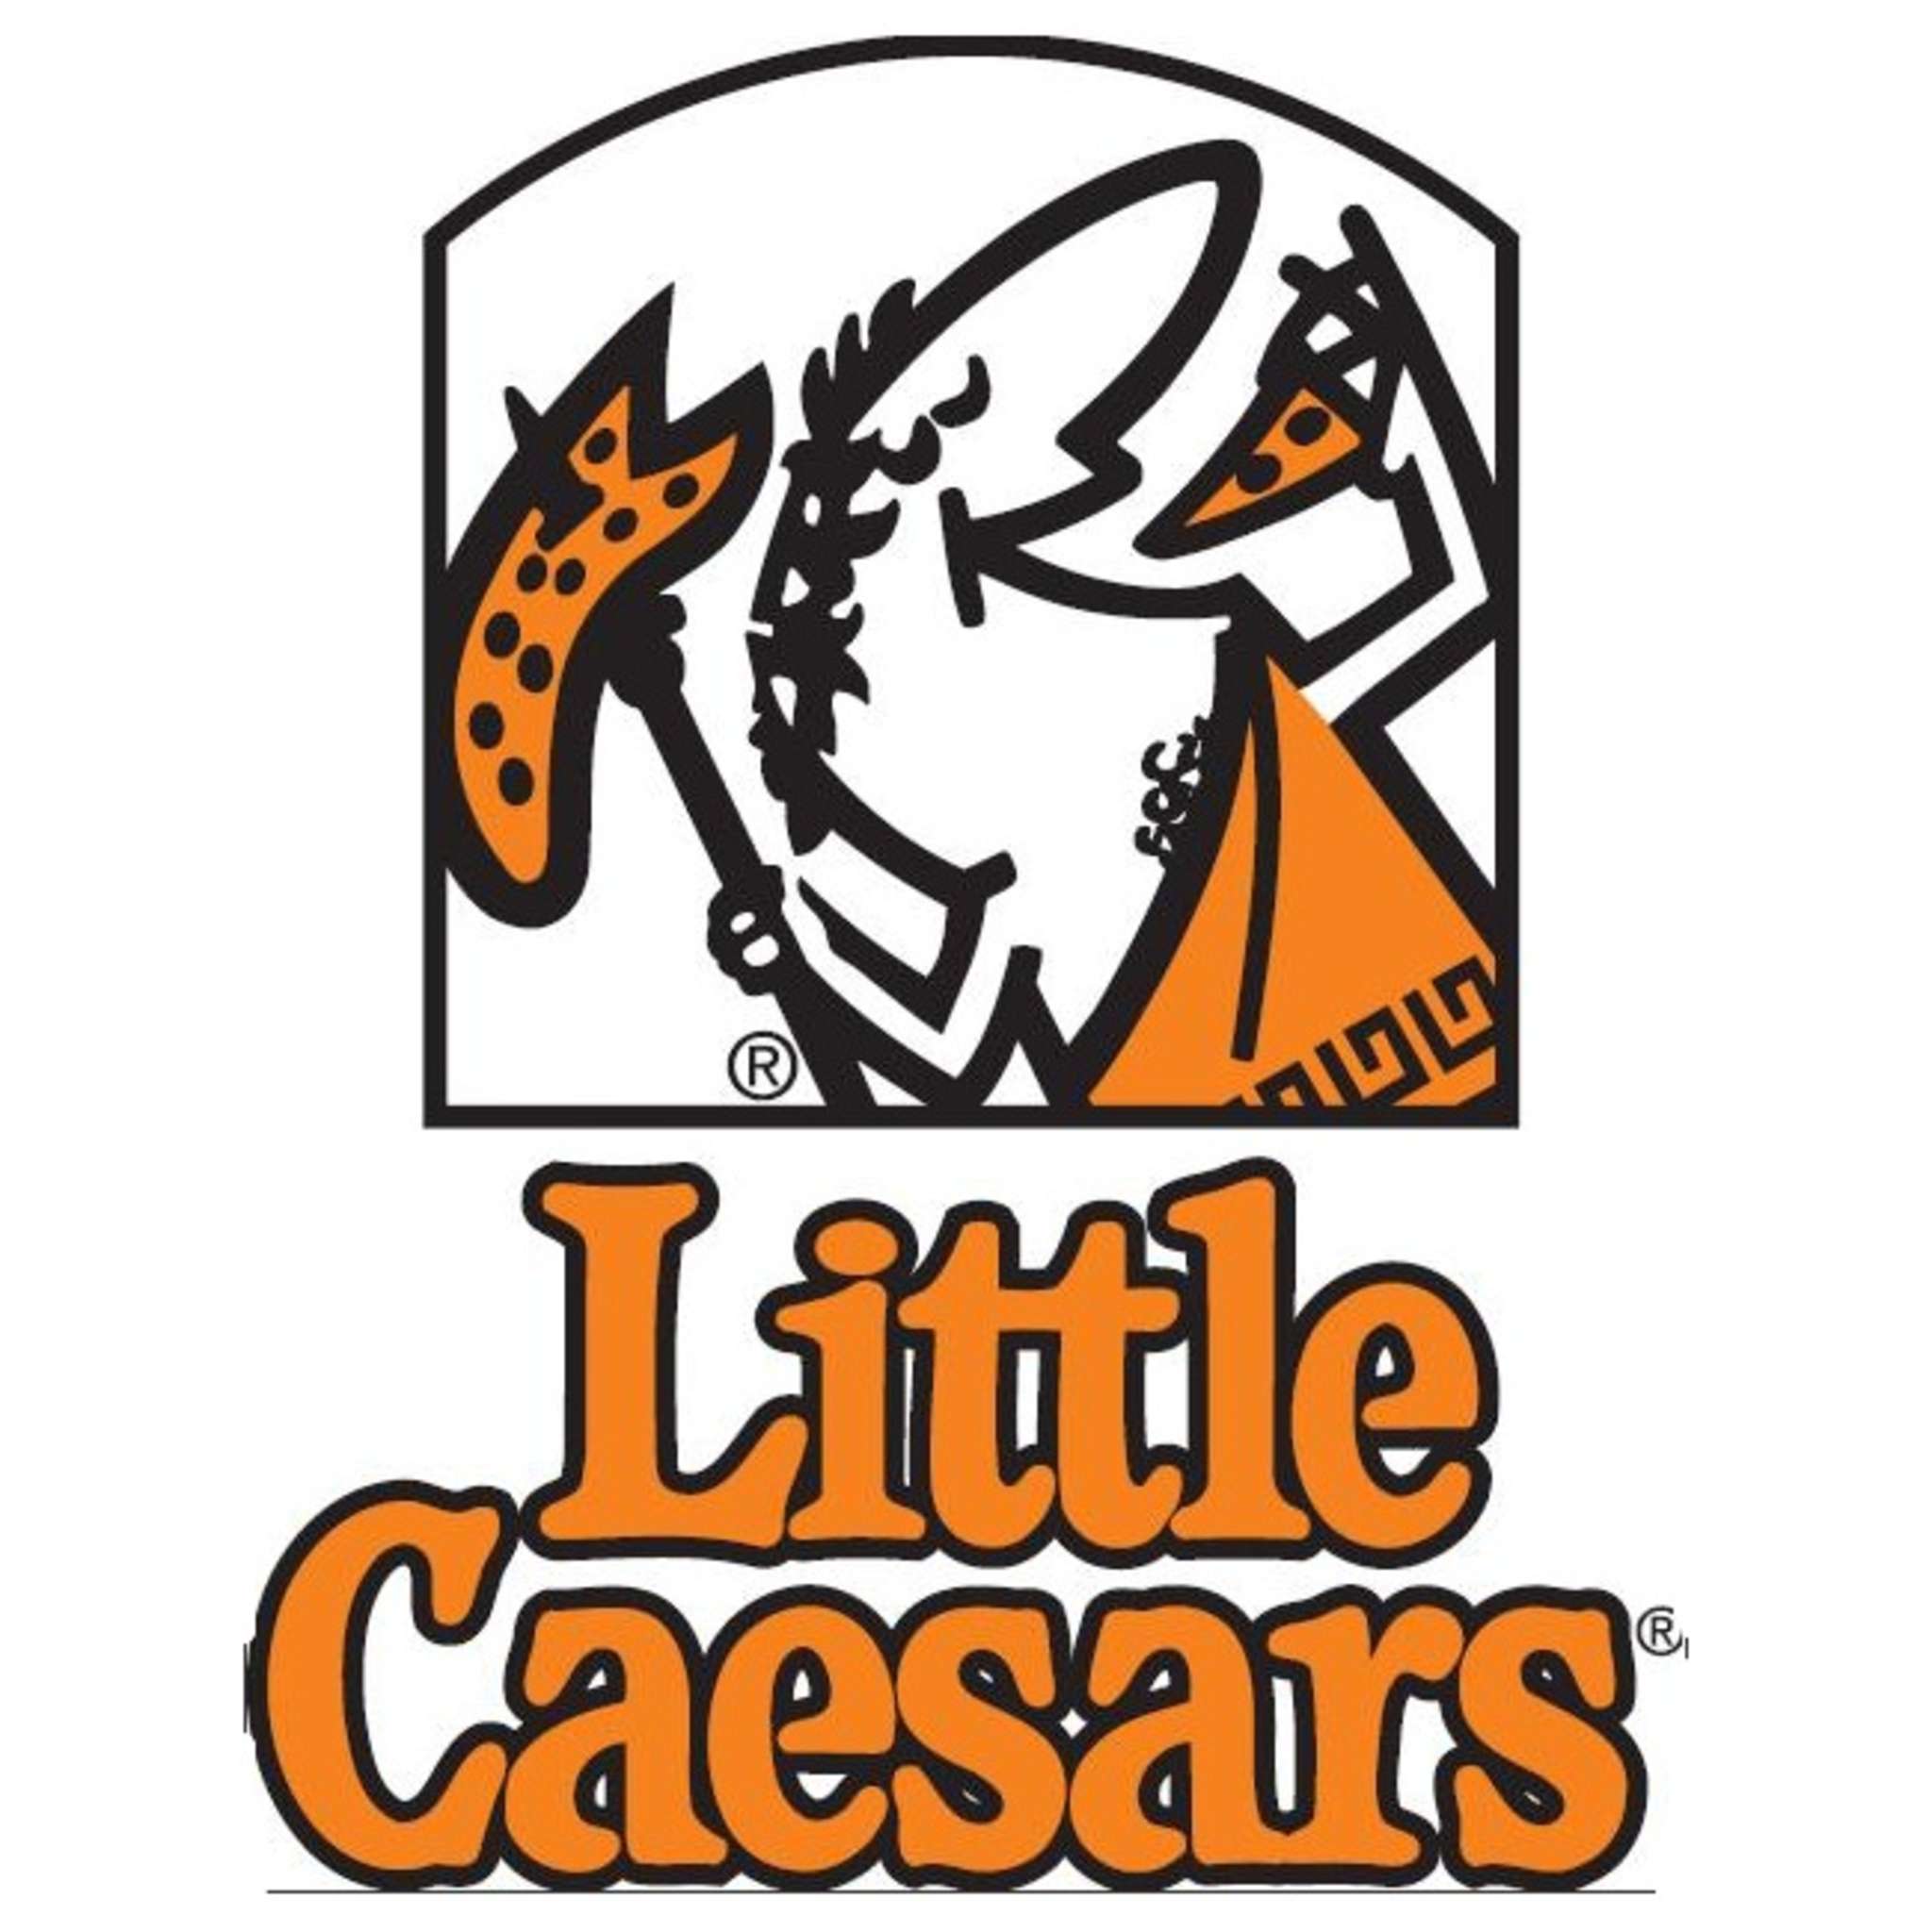 Little Cesars Logo - Little caesars pizza Logos